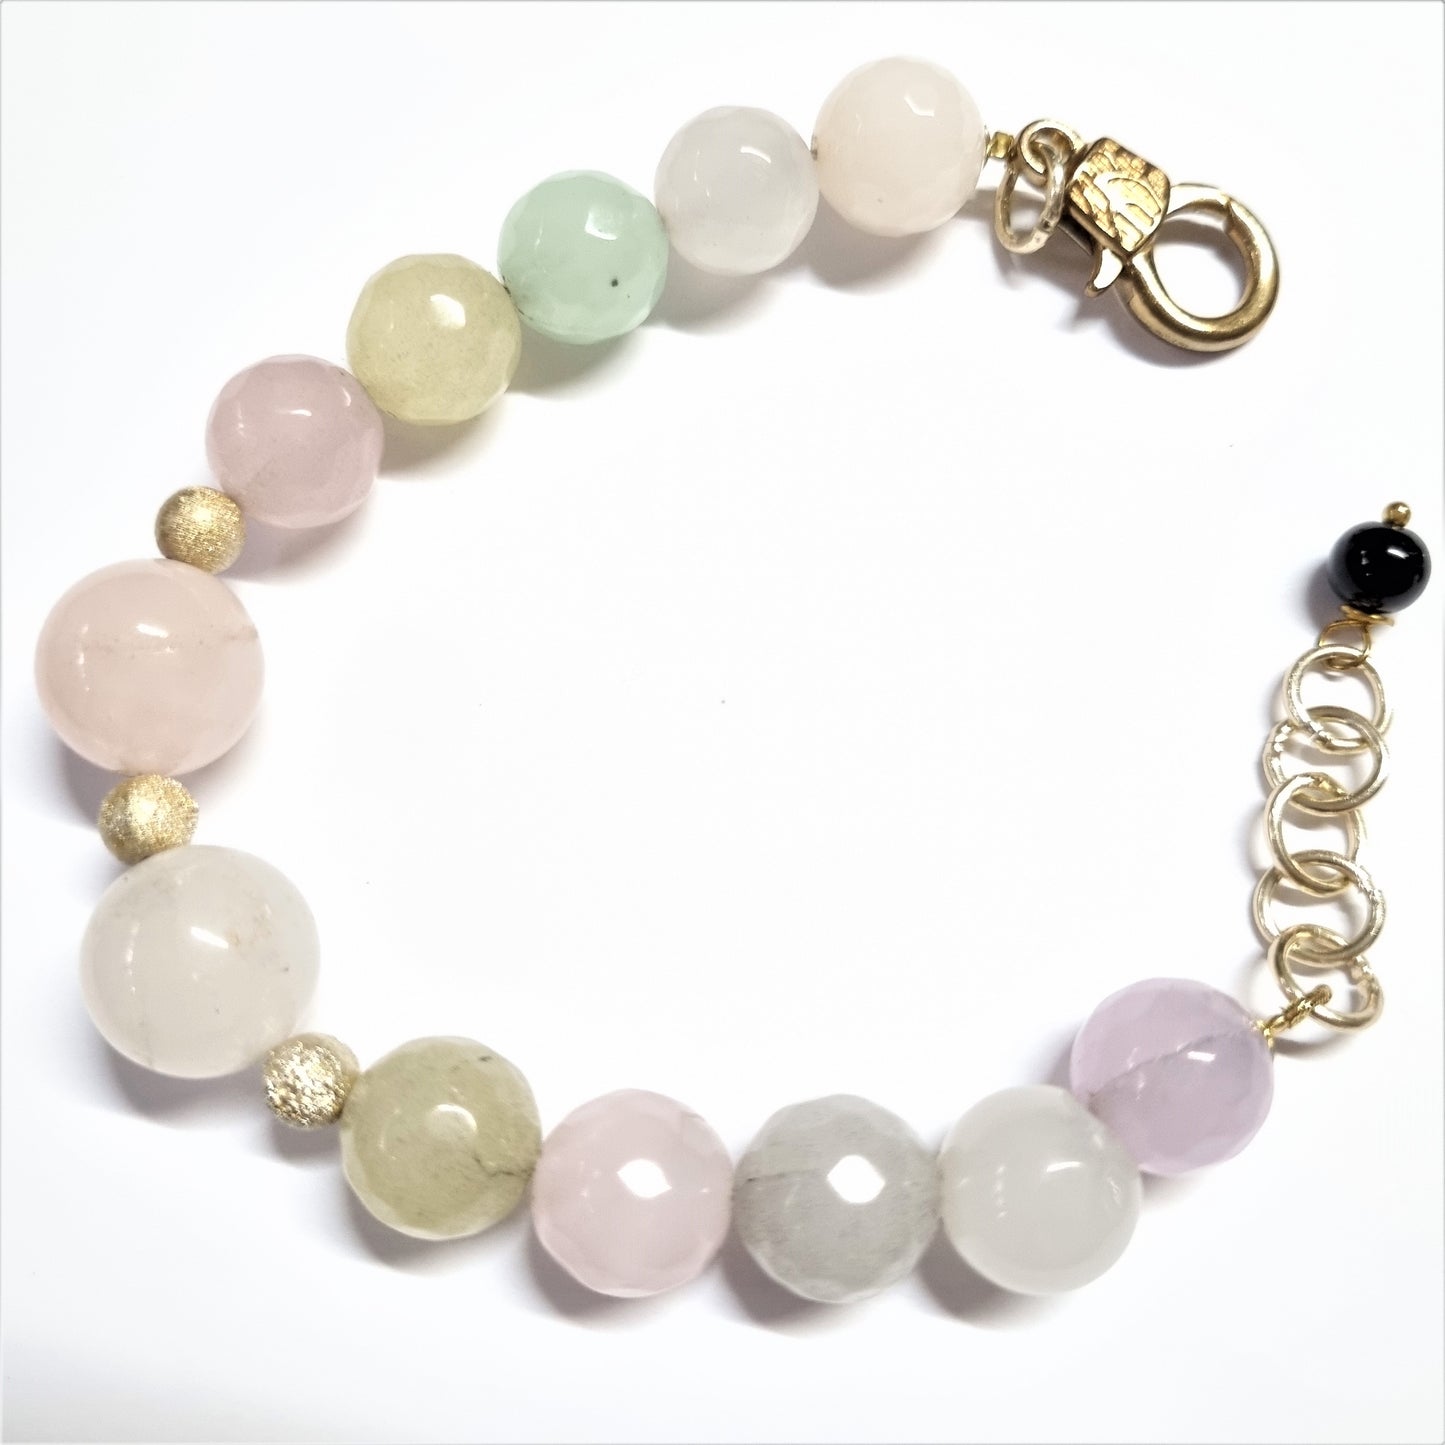 LUXURY collana .018, perle sfaccettate quarzo in vari colori pastello, barilotti e tondo in agata.